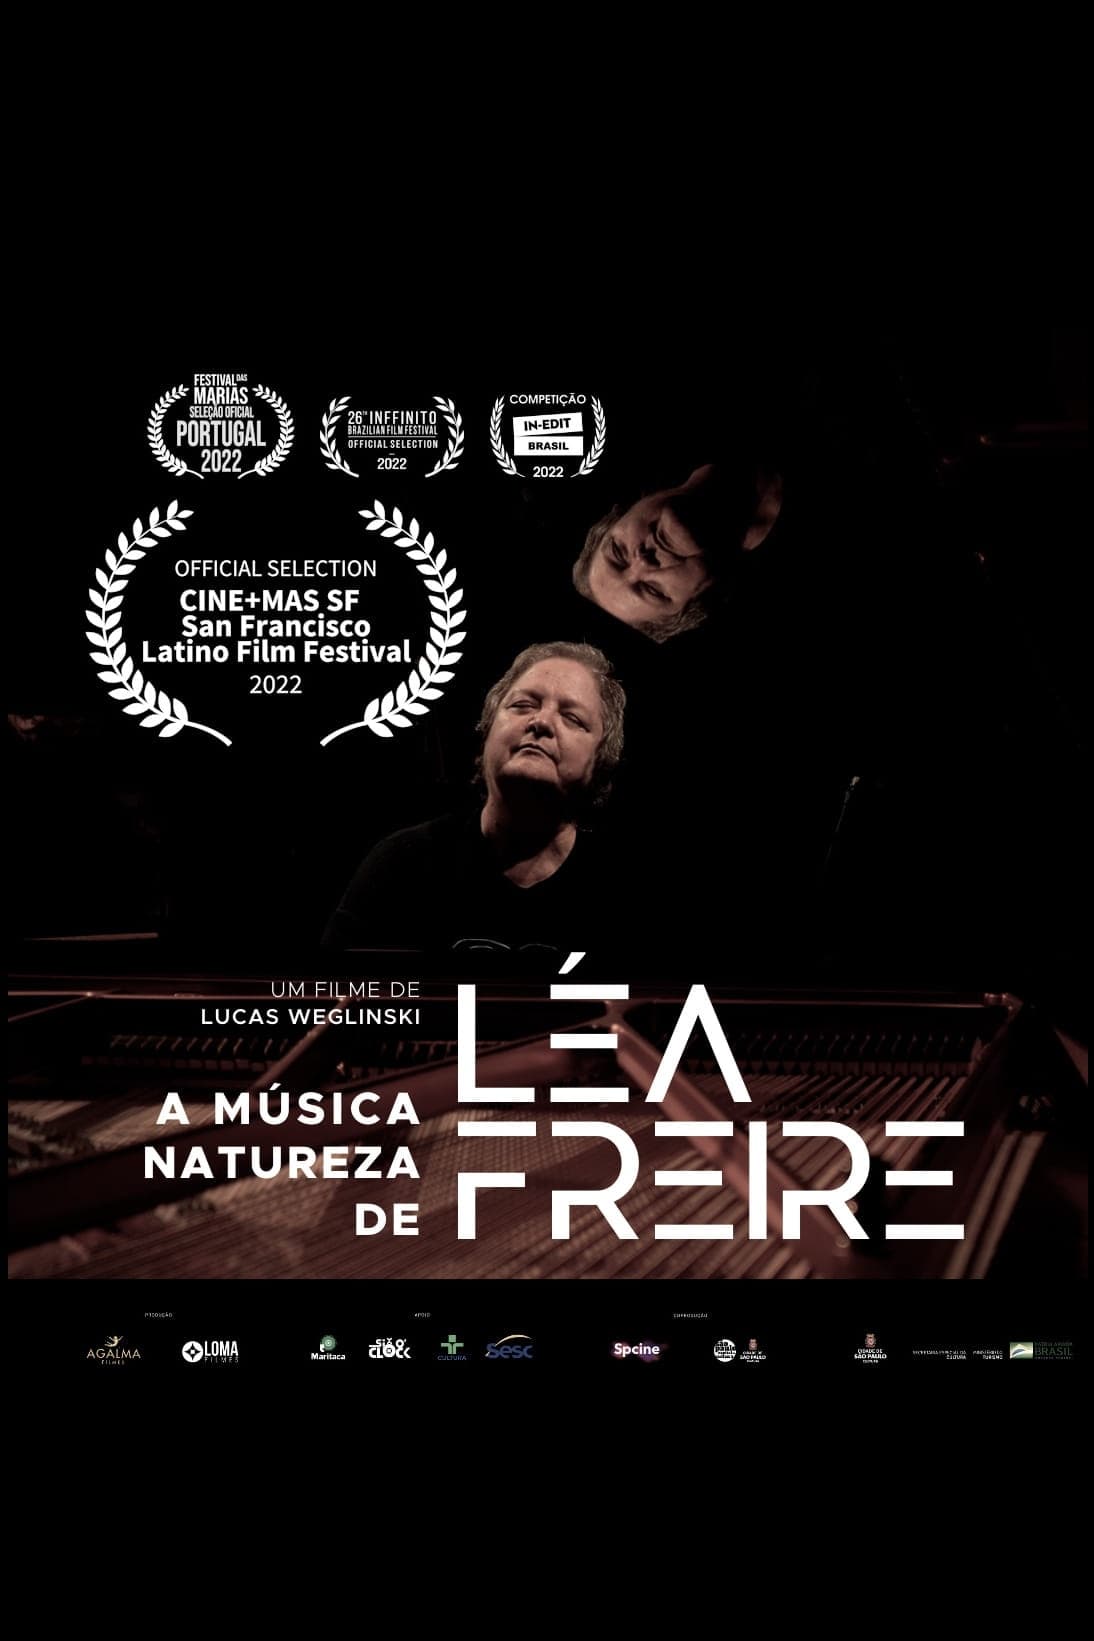 A Música Natureza de Léa Freire